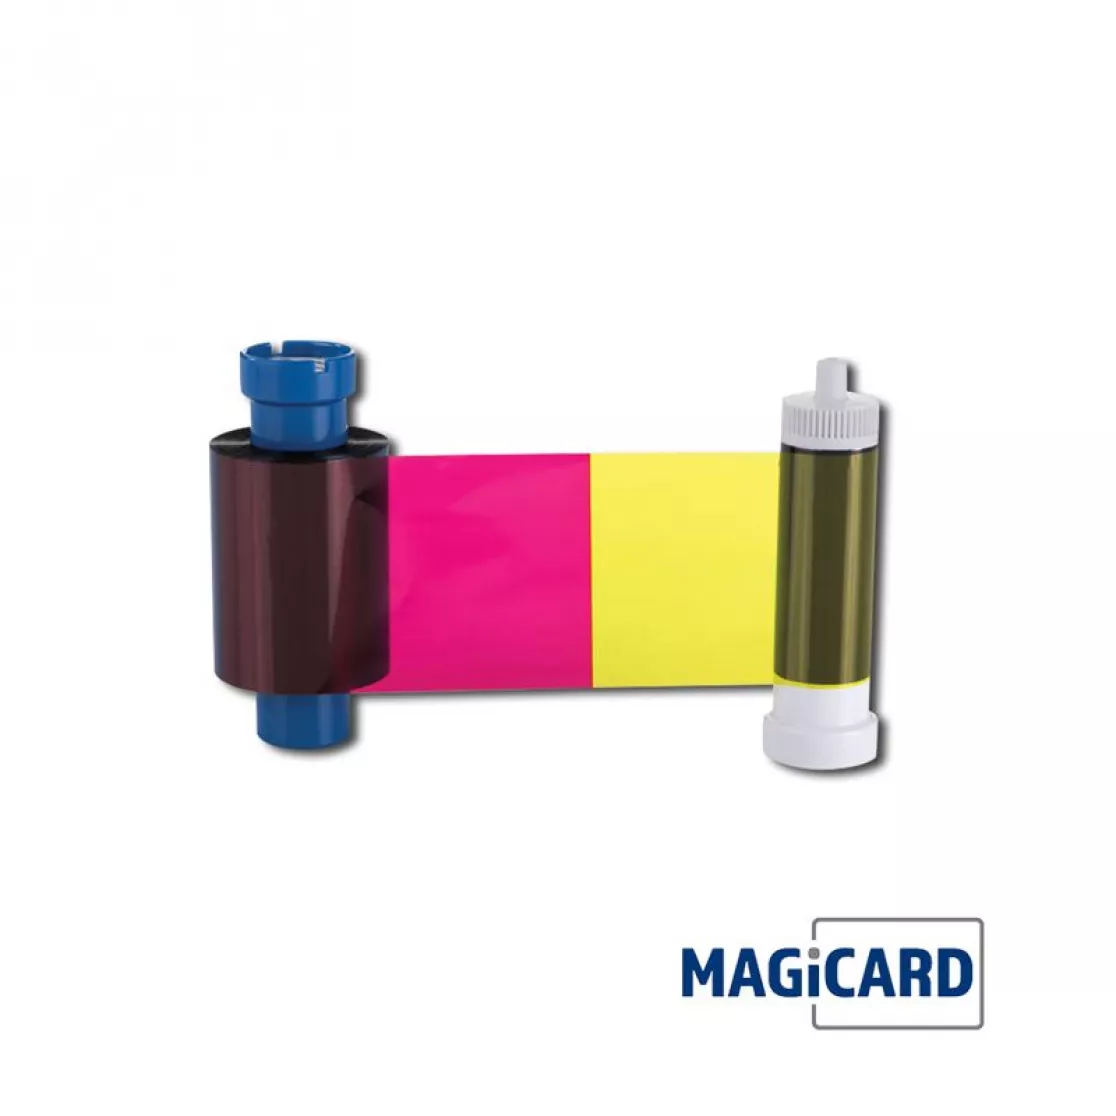 Farbband bunt und schwarz für Kartendrucker magicard 600